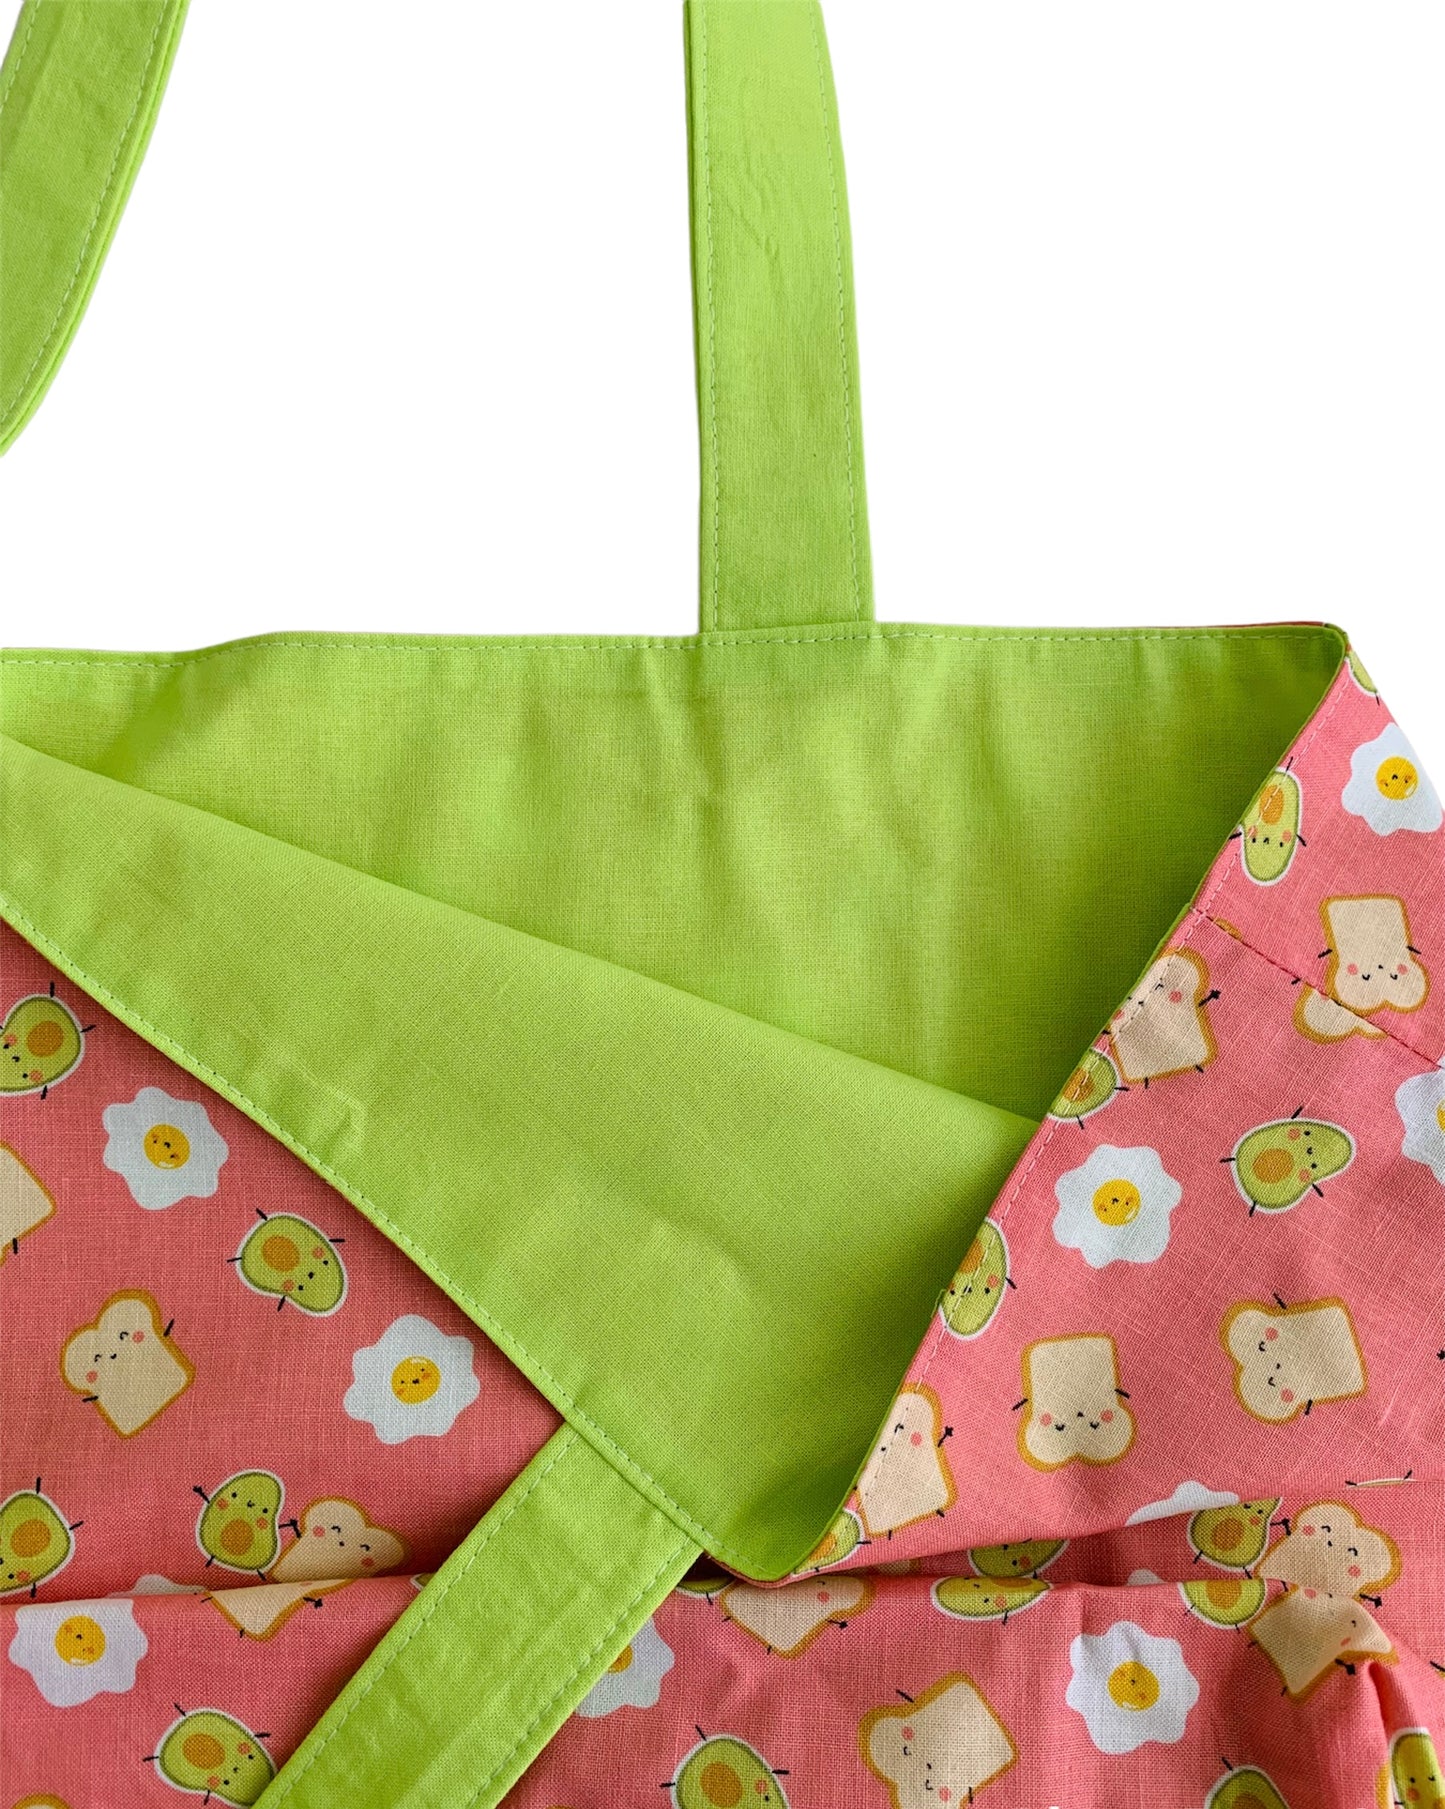 Avocado Toast Cute Cotton Reusable Shopping Tote Bag